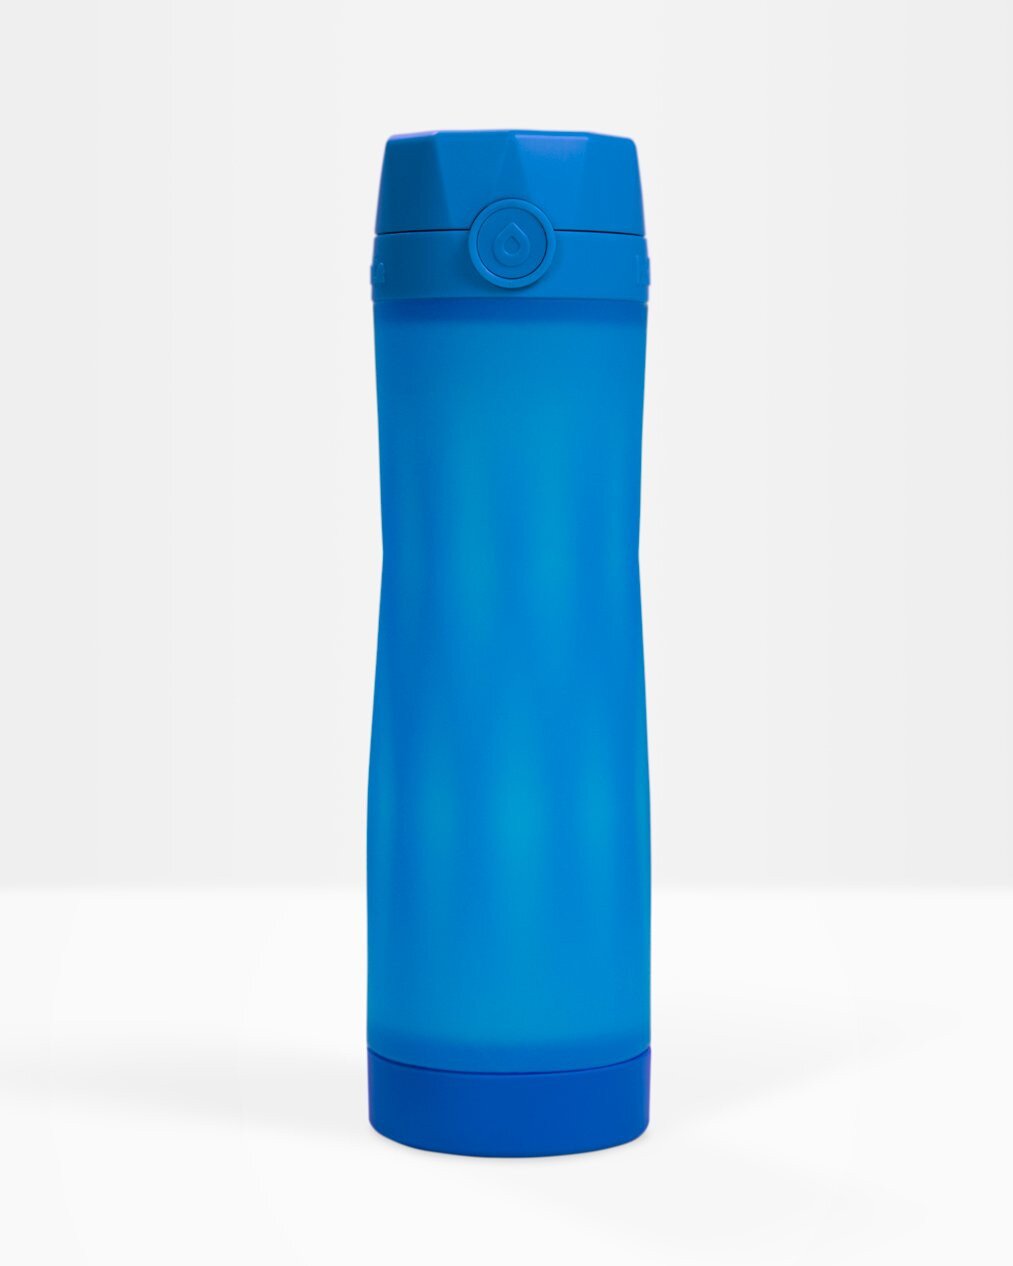 NEW HidrateSpark 3 Smart Water Bottle & Free Hydration Tracker App Royal 